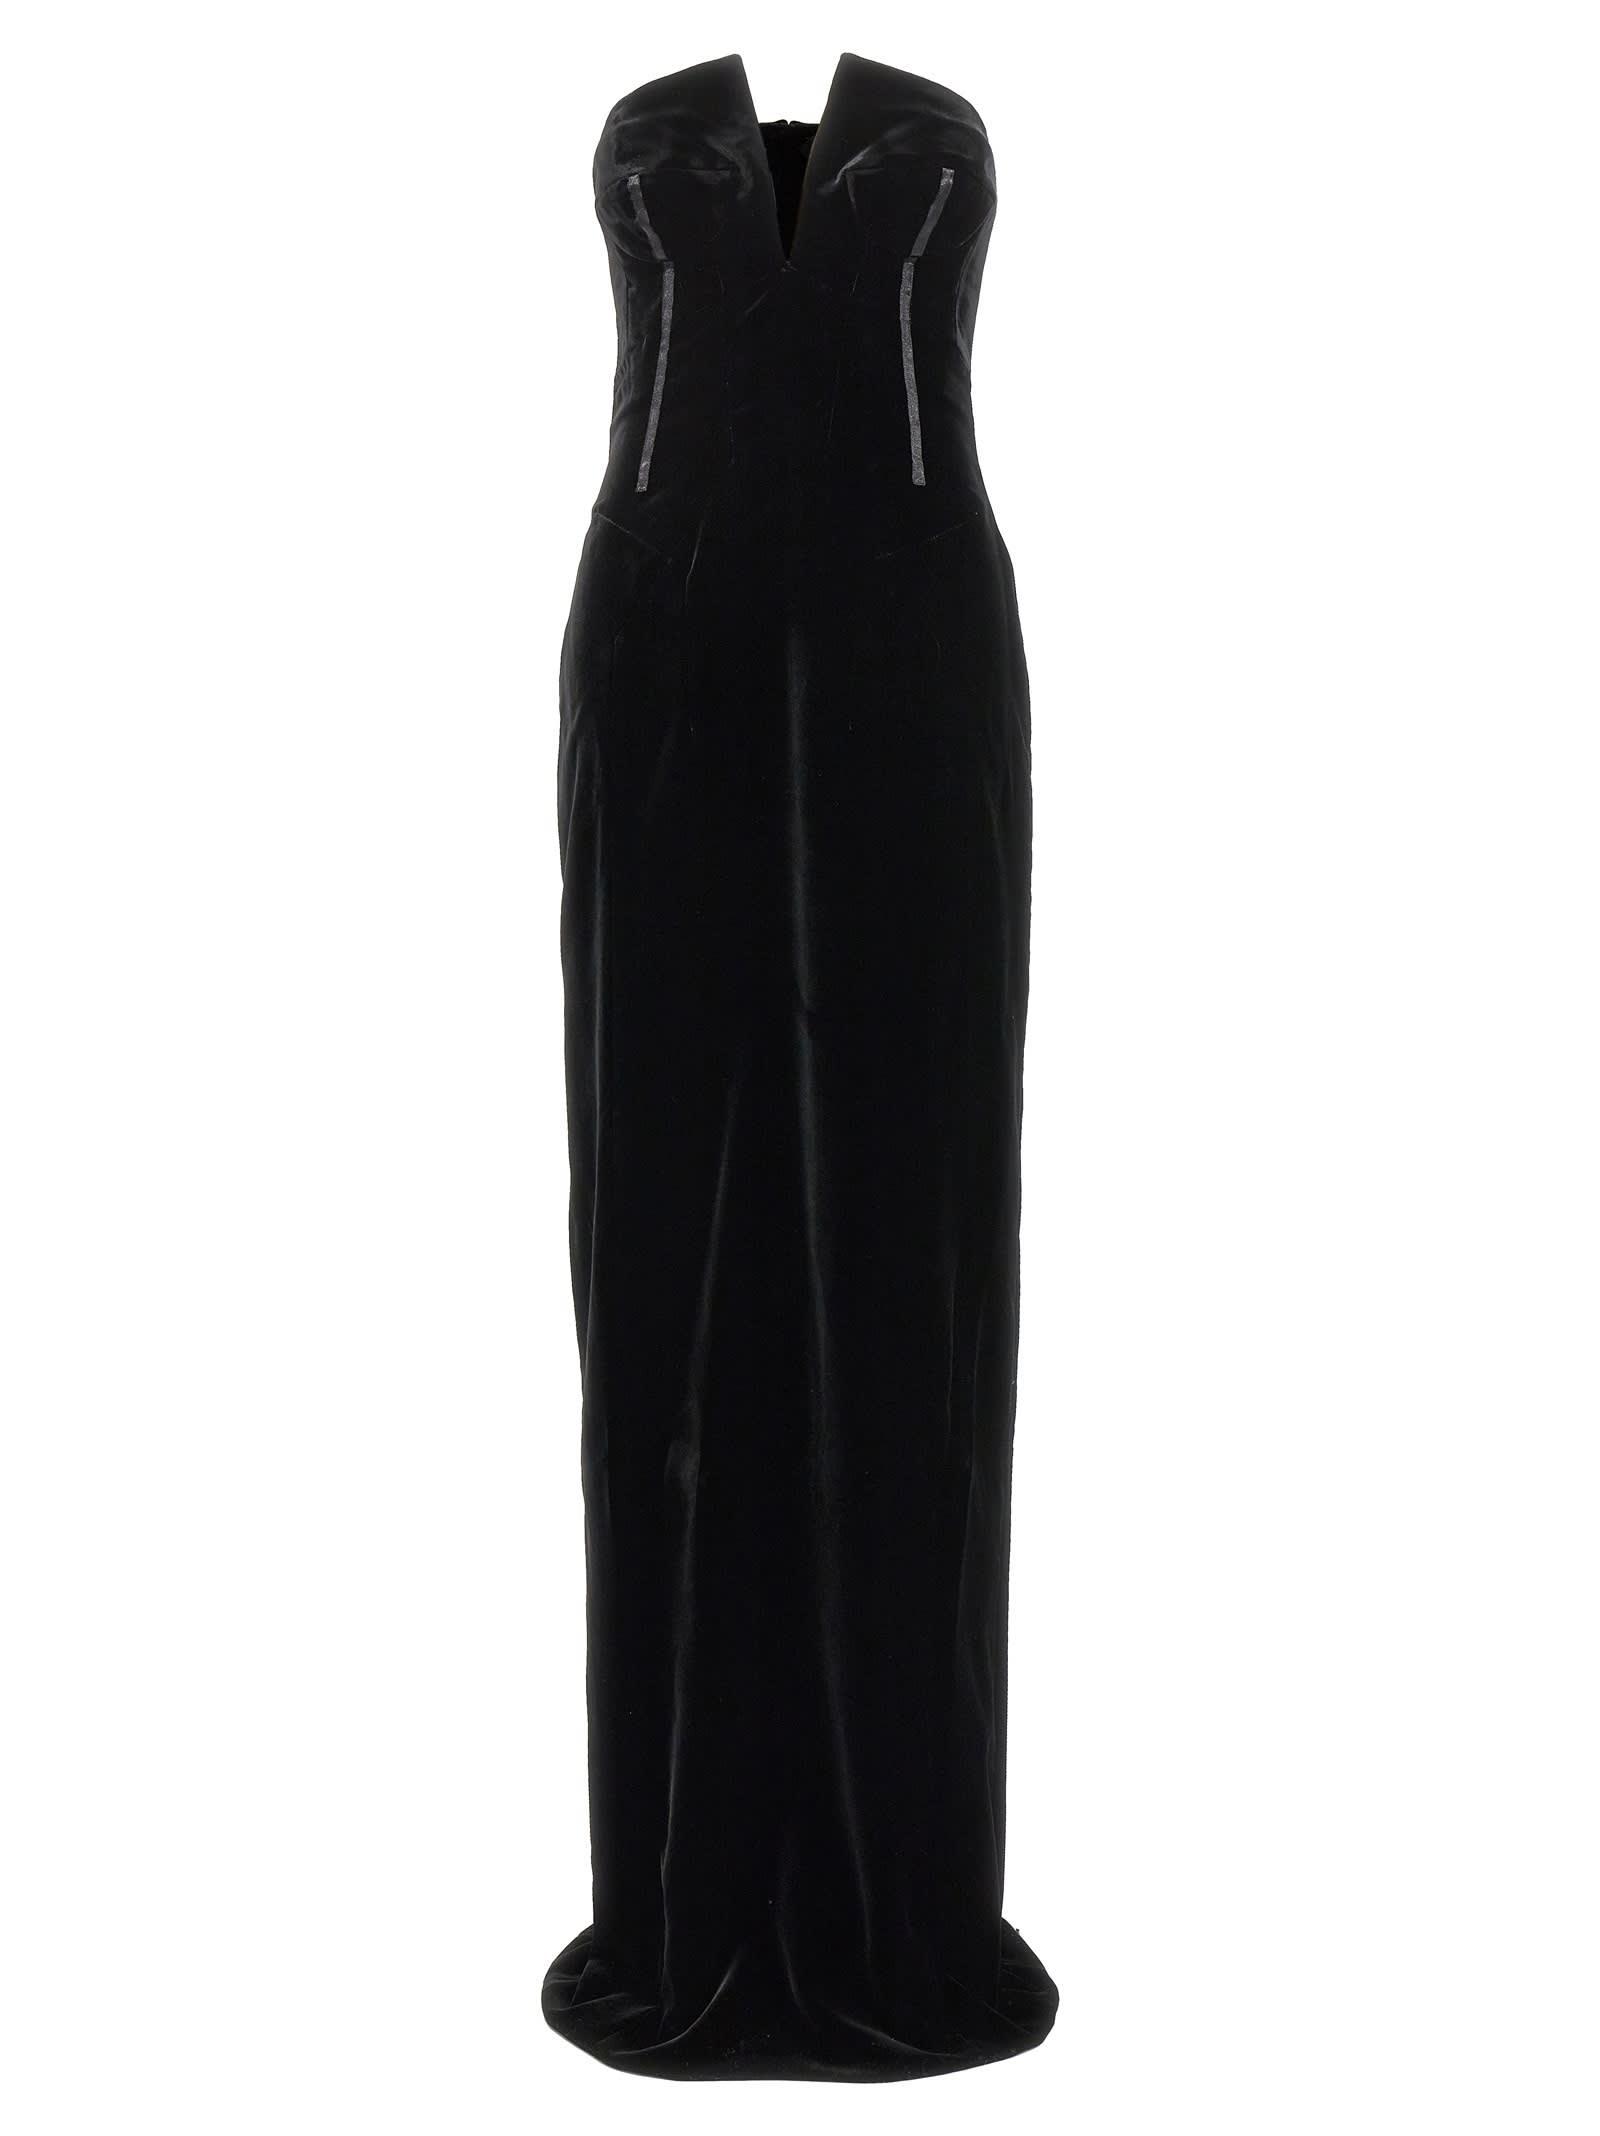 Black Velvet Ball Gown Victorian Gown D3001 - D-RoseBlooming